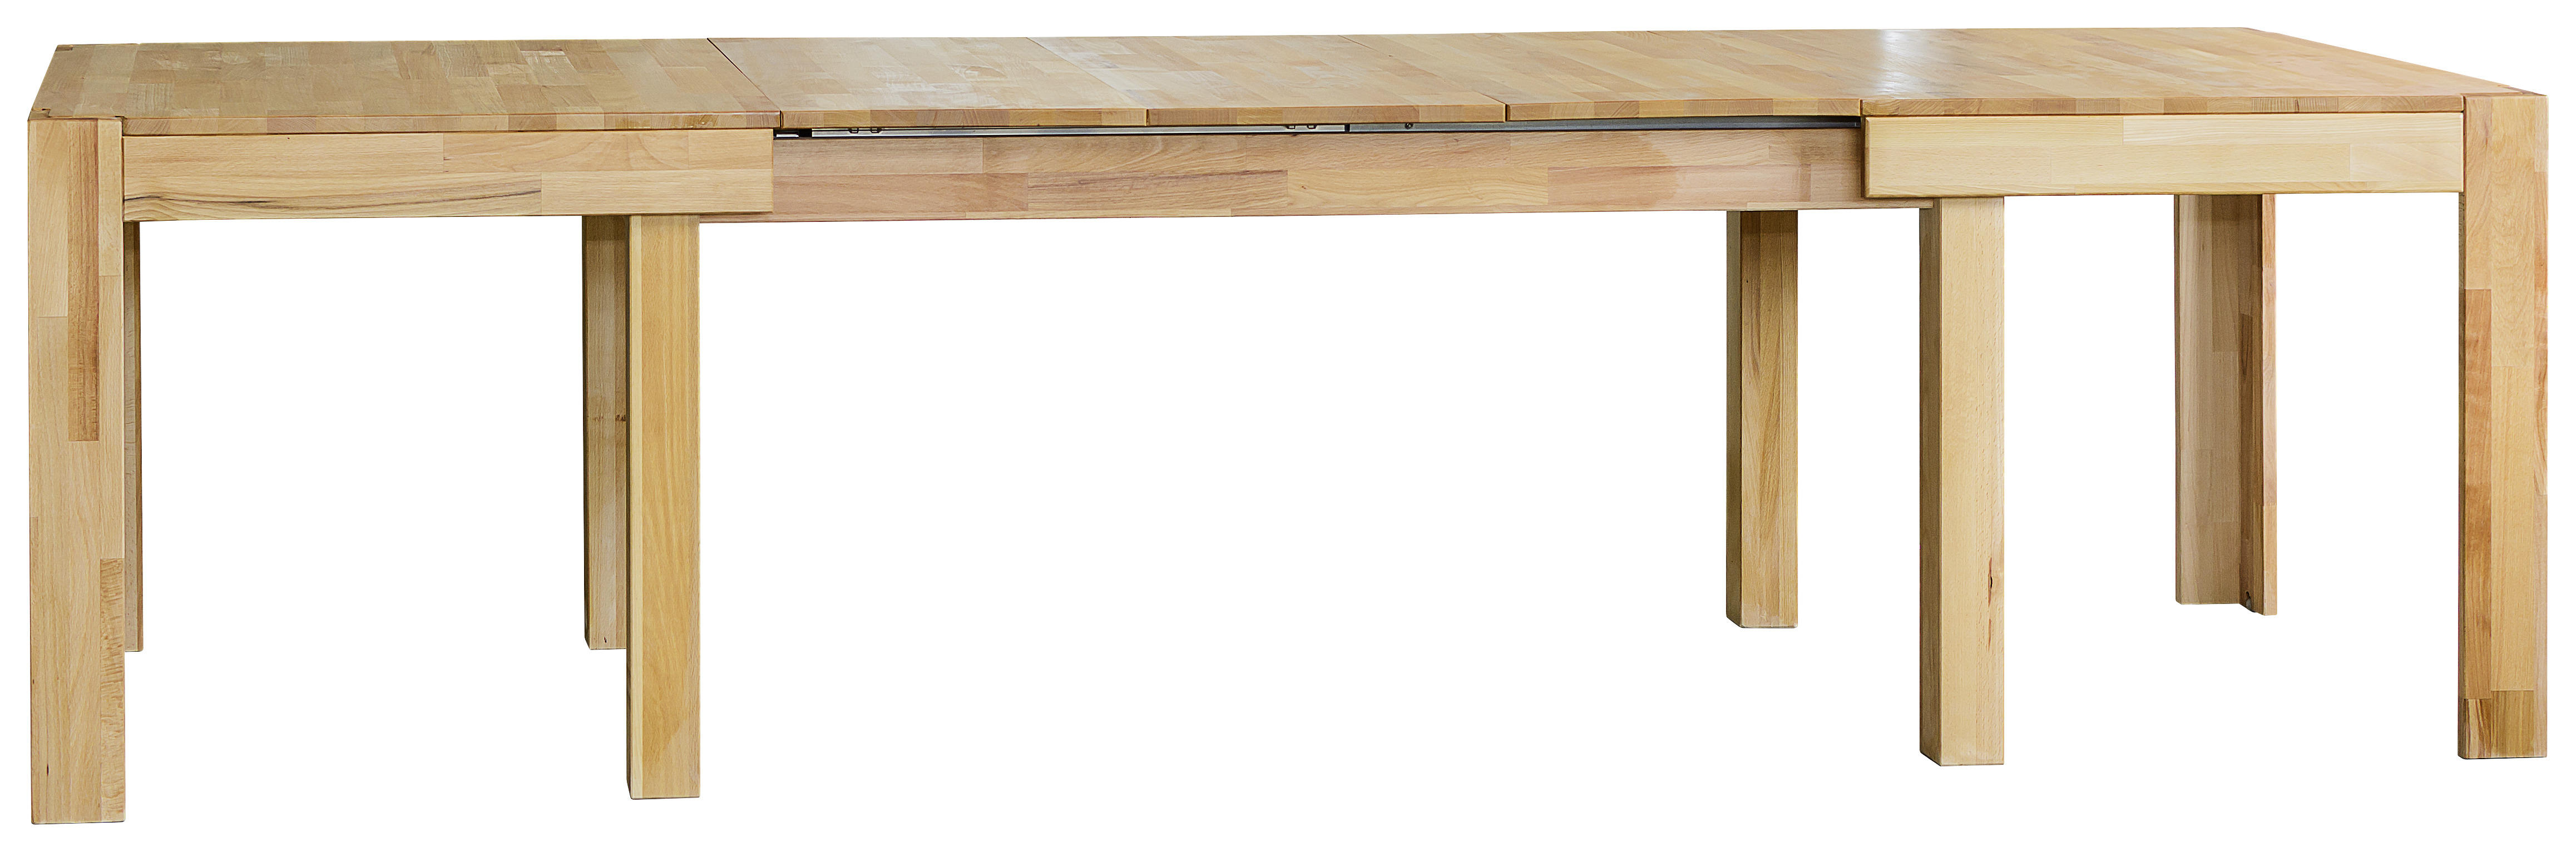 ESSTISCH 160/90/75 cm Kernbuche massiv Holz Buchefarben rechteckig  - Buchefarben, Natur, Holz (160/90/75cm) - Livetastic